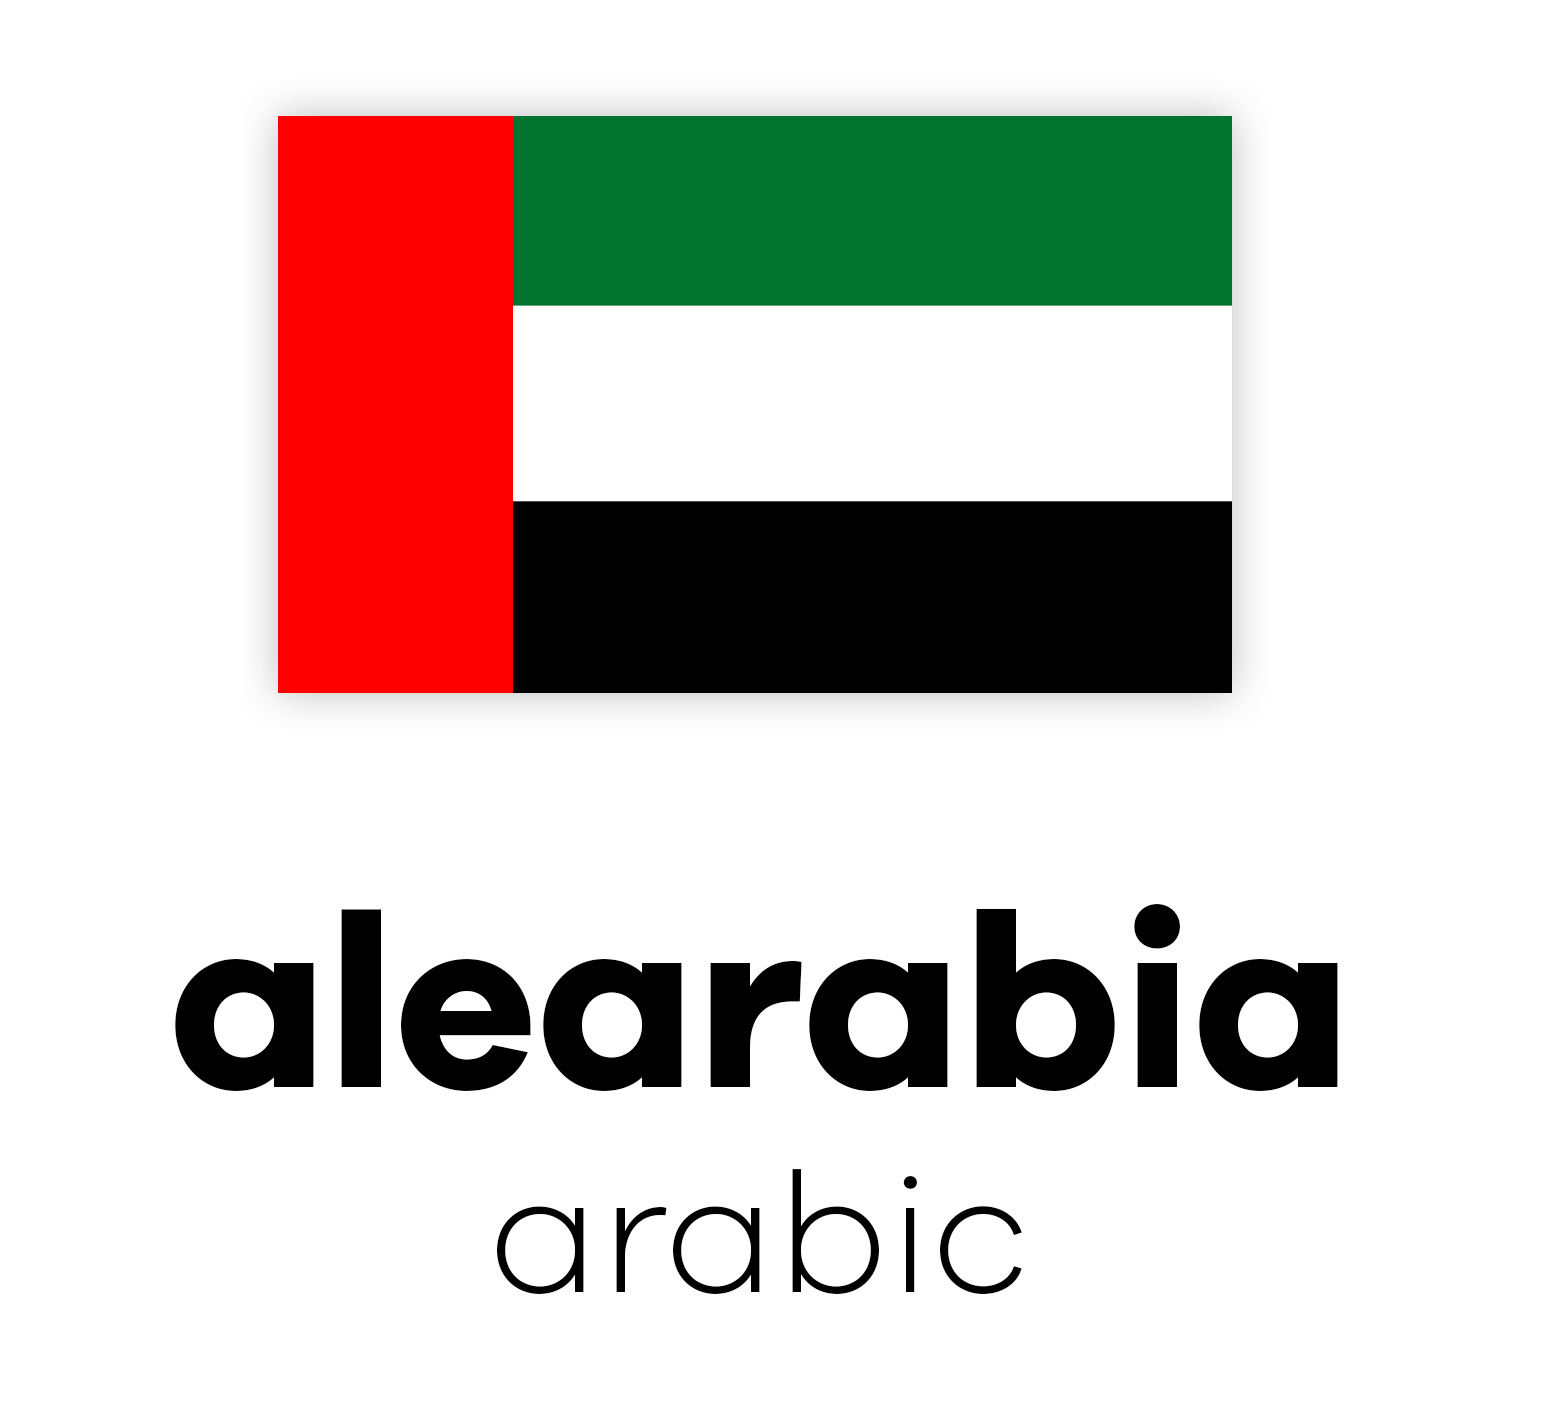 Flagge der Vereinigten Arabischen Emirate mit dem Schriftzug "alearabia arabic" darunter in schwarz auf weißem Hintergrund.